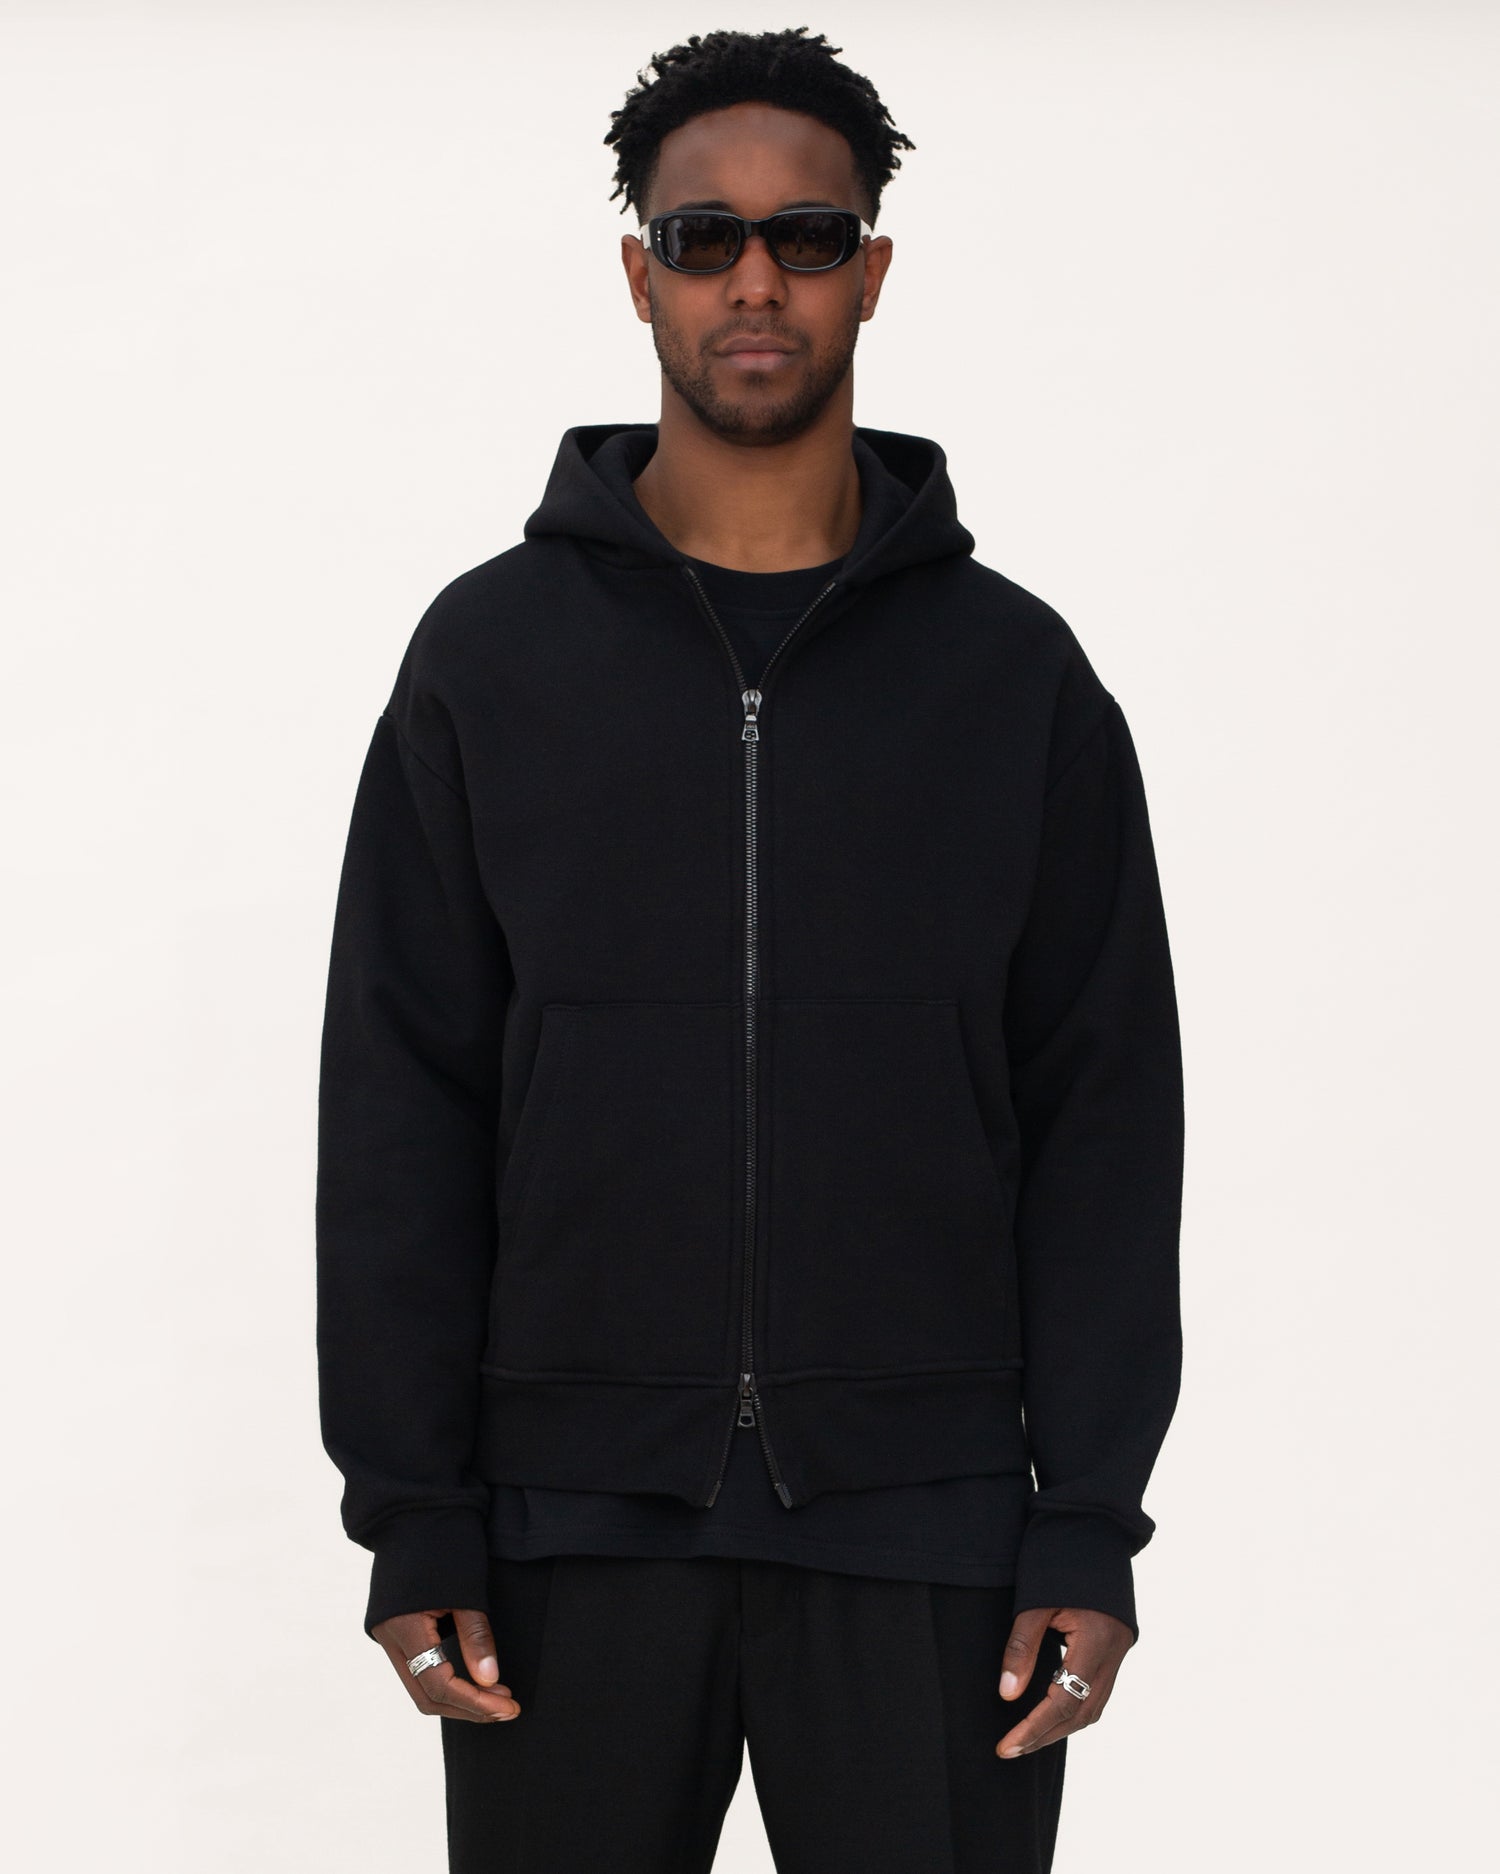 zip up hoodies, black hoodie, mens hoodie, front side